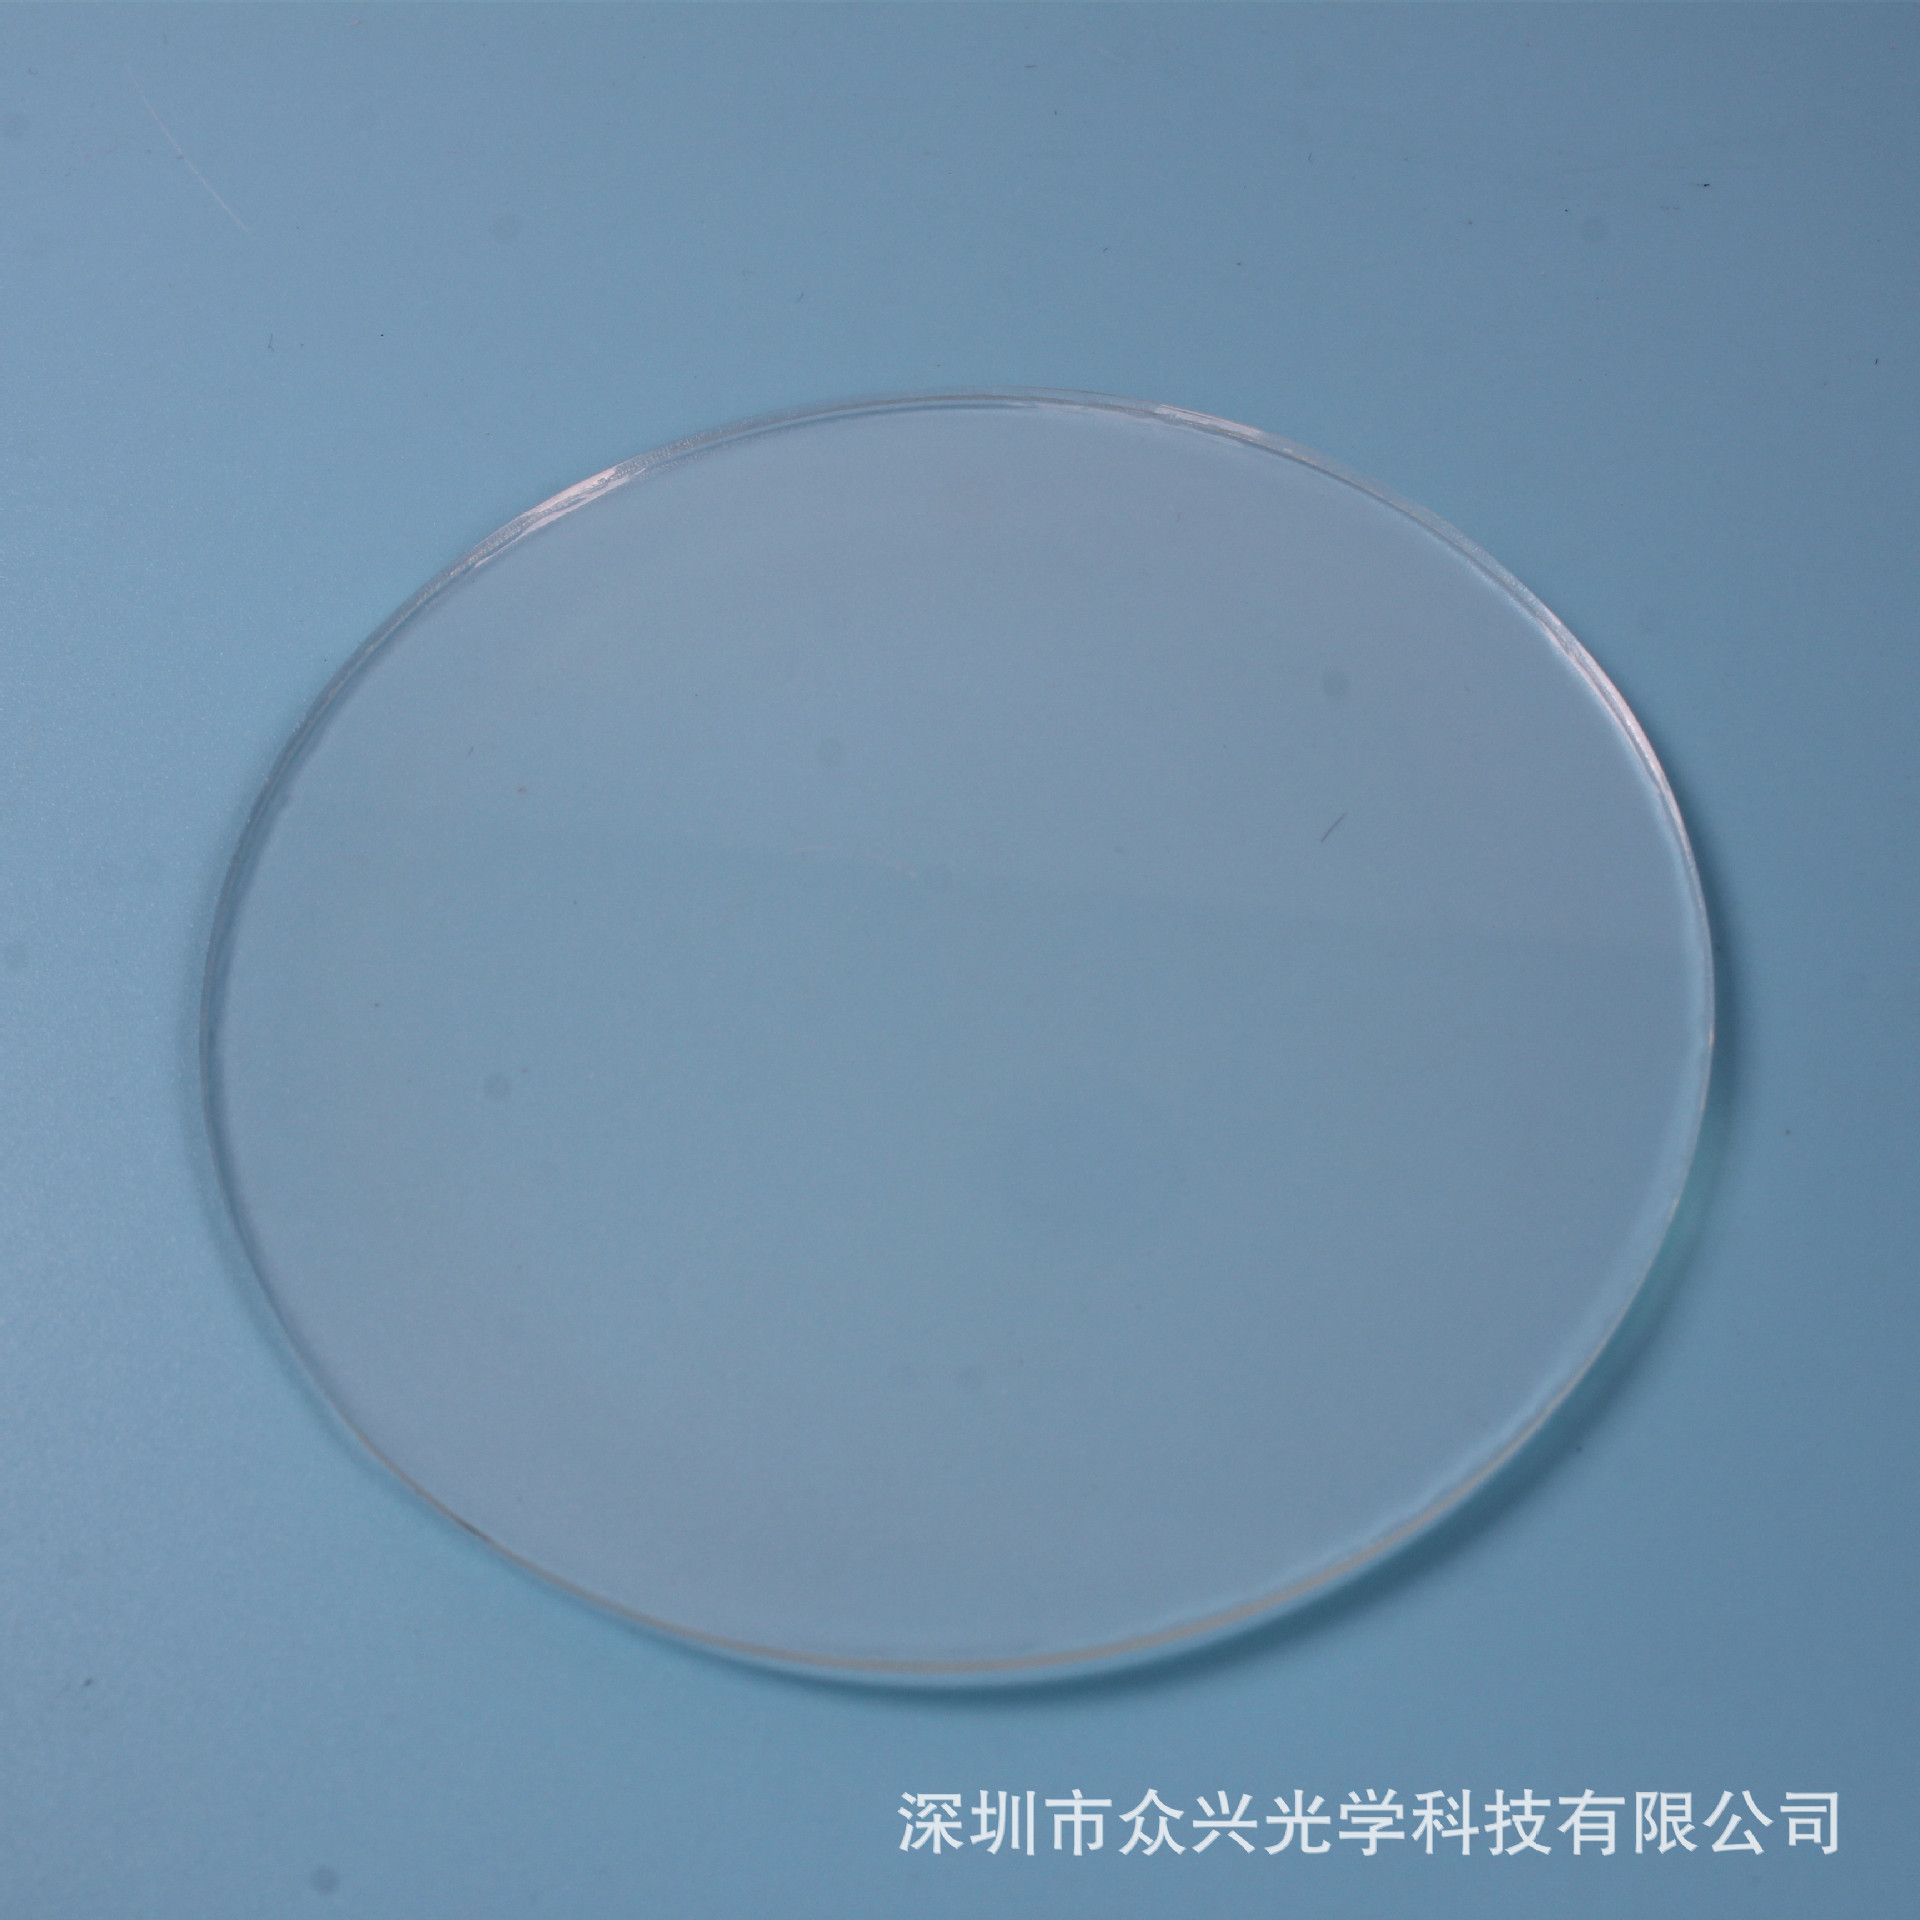 蓝宝石玻璃镜片定制加工 厂家直销供应价格优惠 欢迎定制各种规格